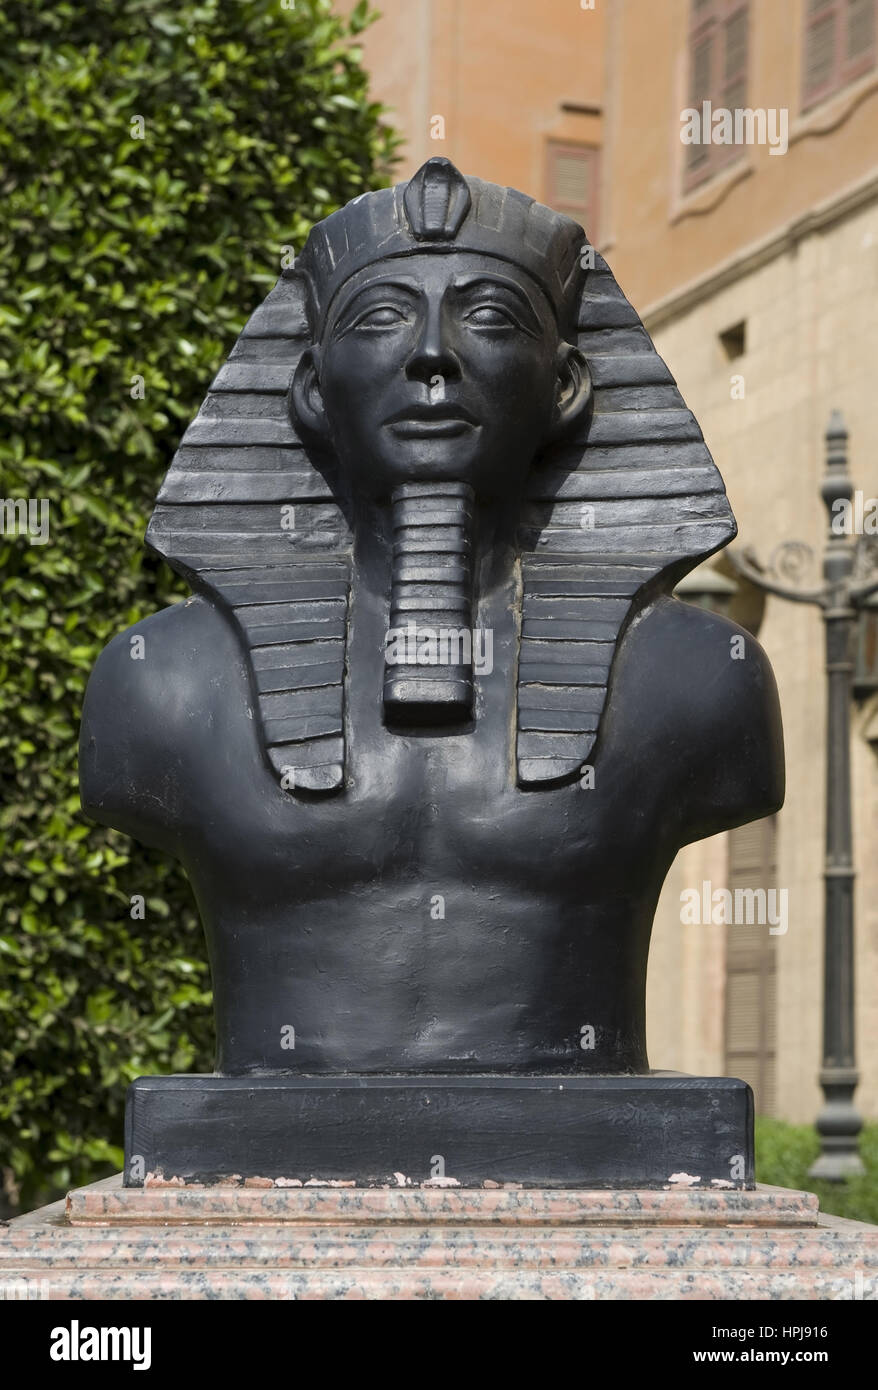 Denkmal, Kairo, aegypten - Cairo, Egypt Stock Photo